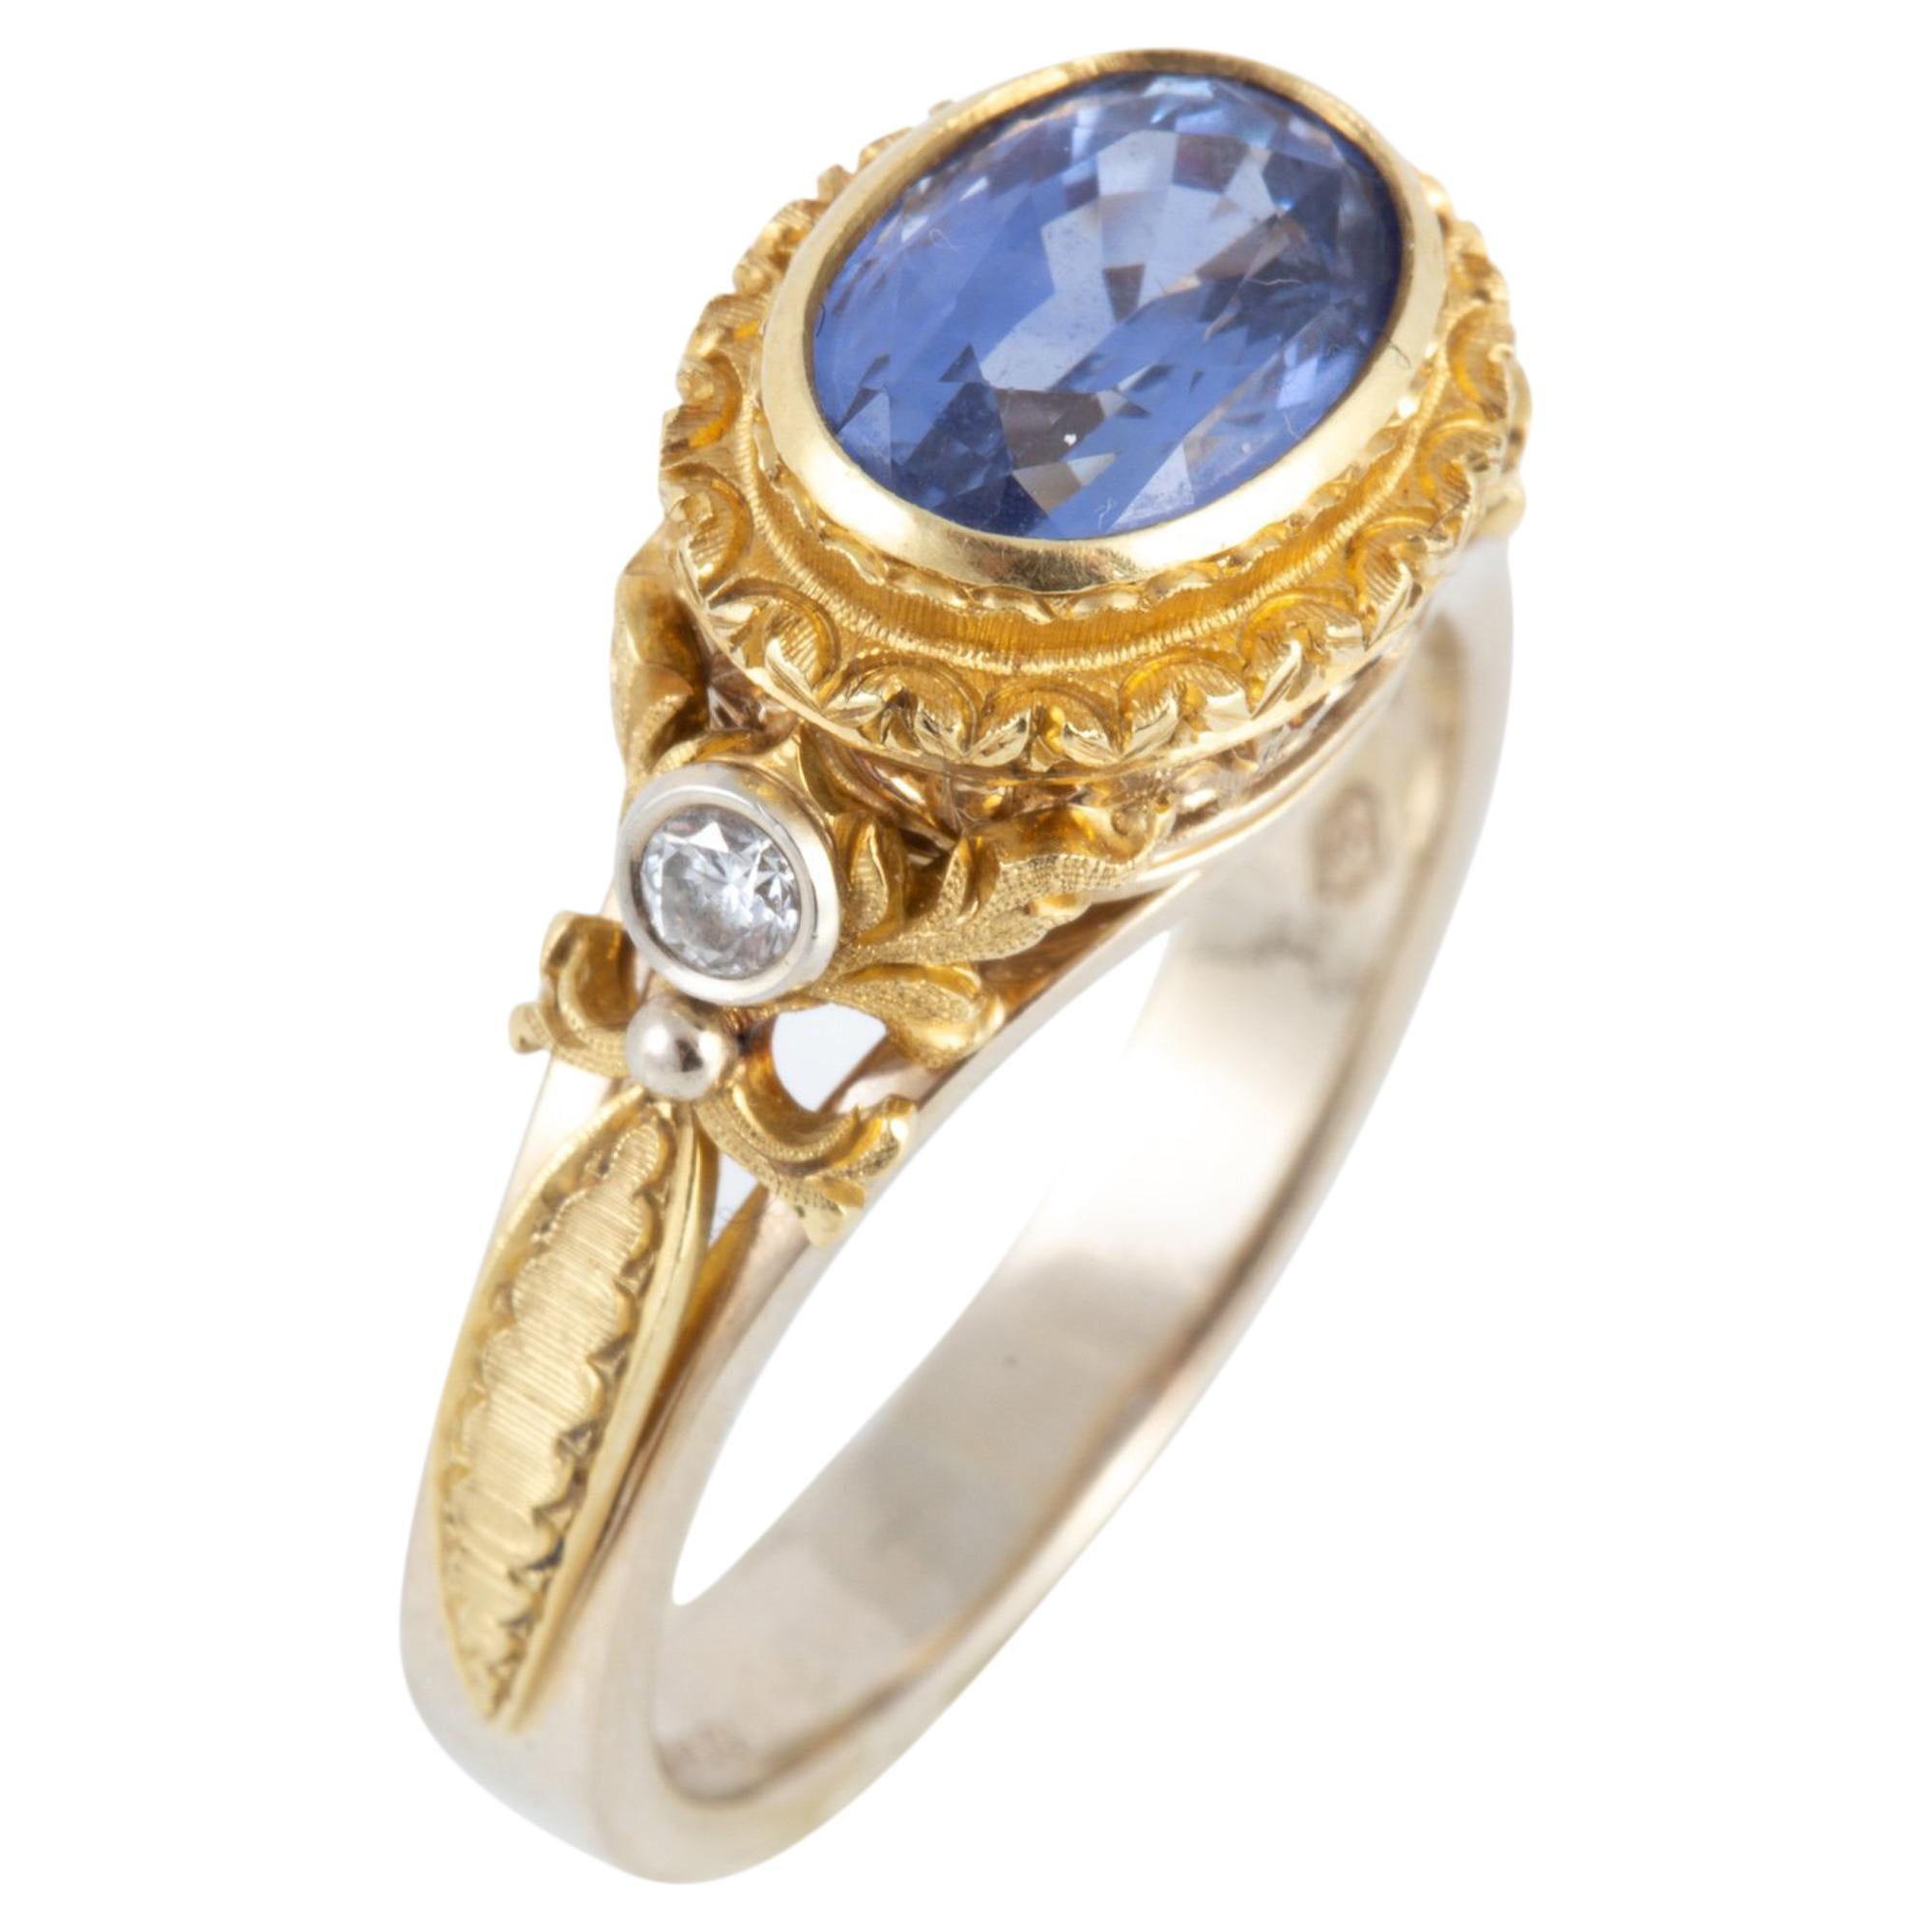 Bague en or 18 carats avec saphir bleu de Ceylan gravé à la main et diamants